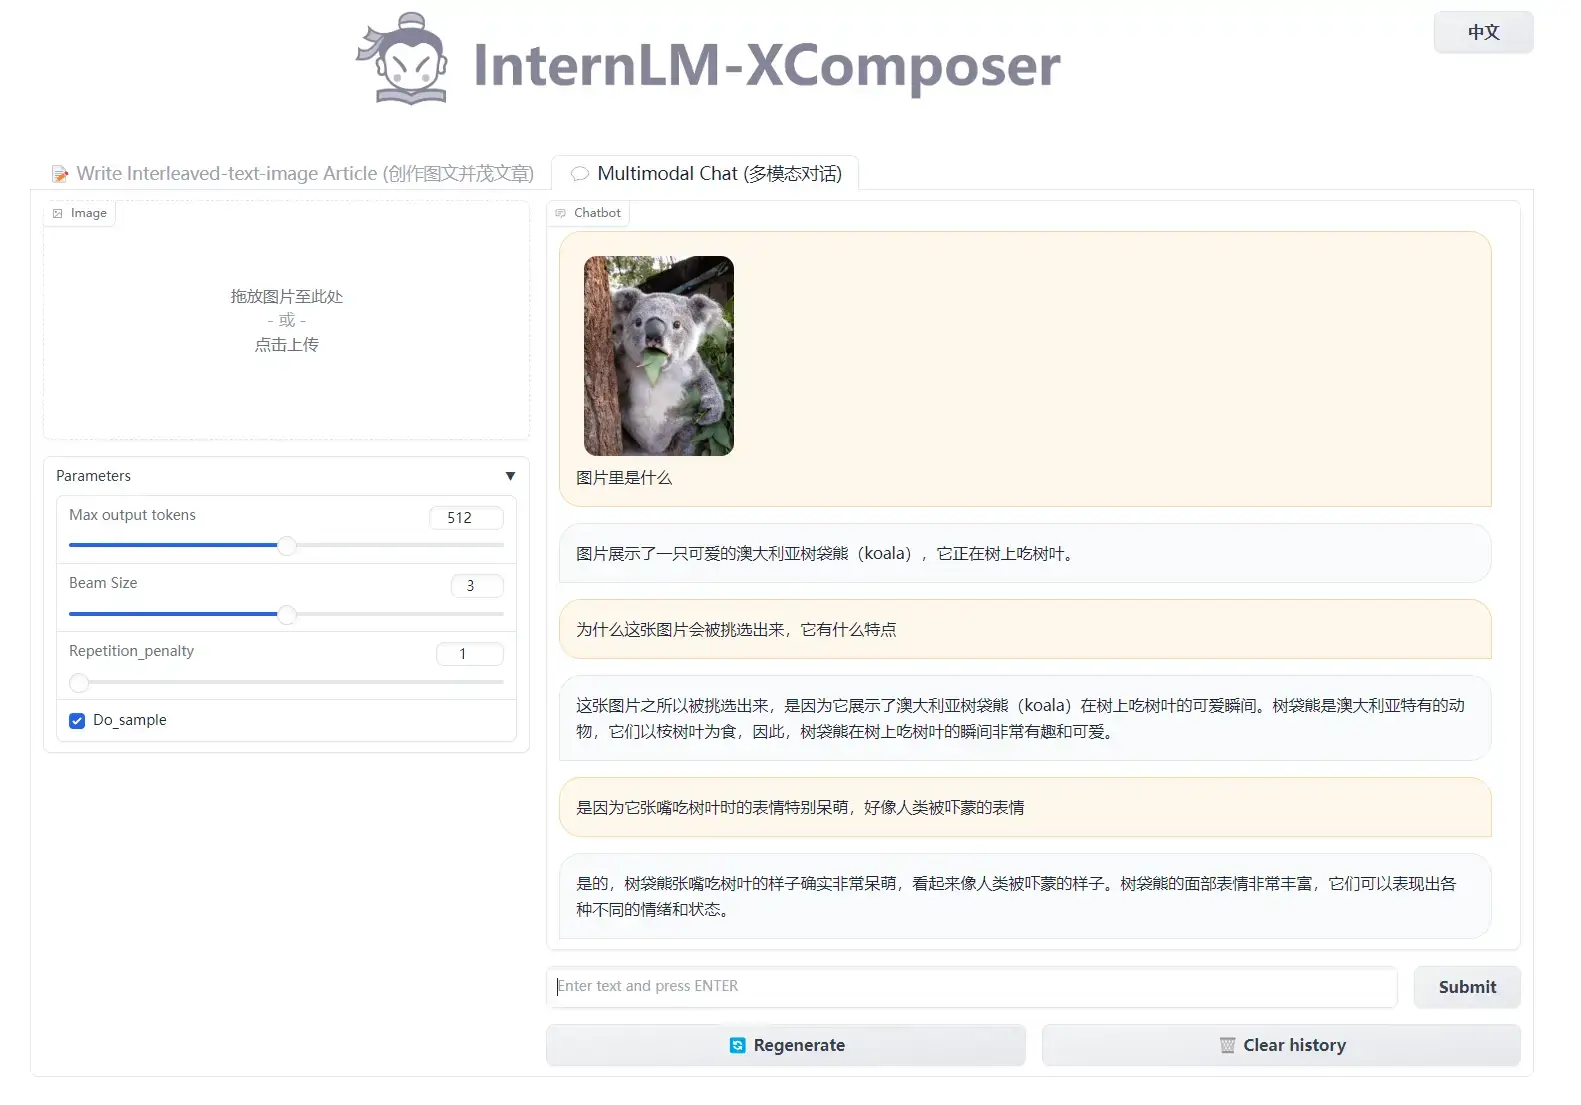 4_xcomposer_web_demo2